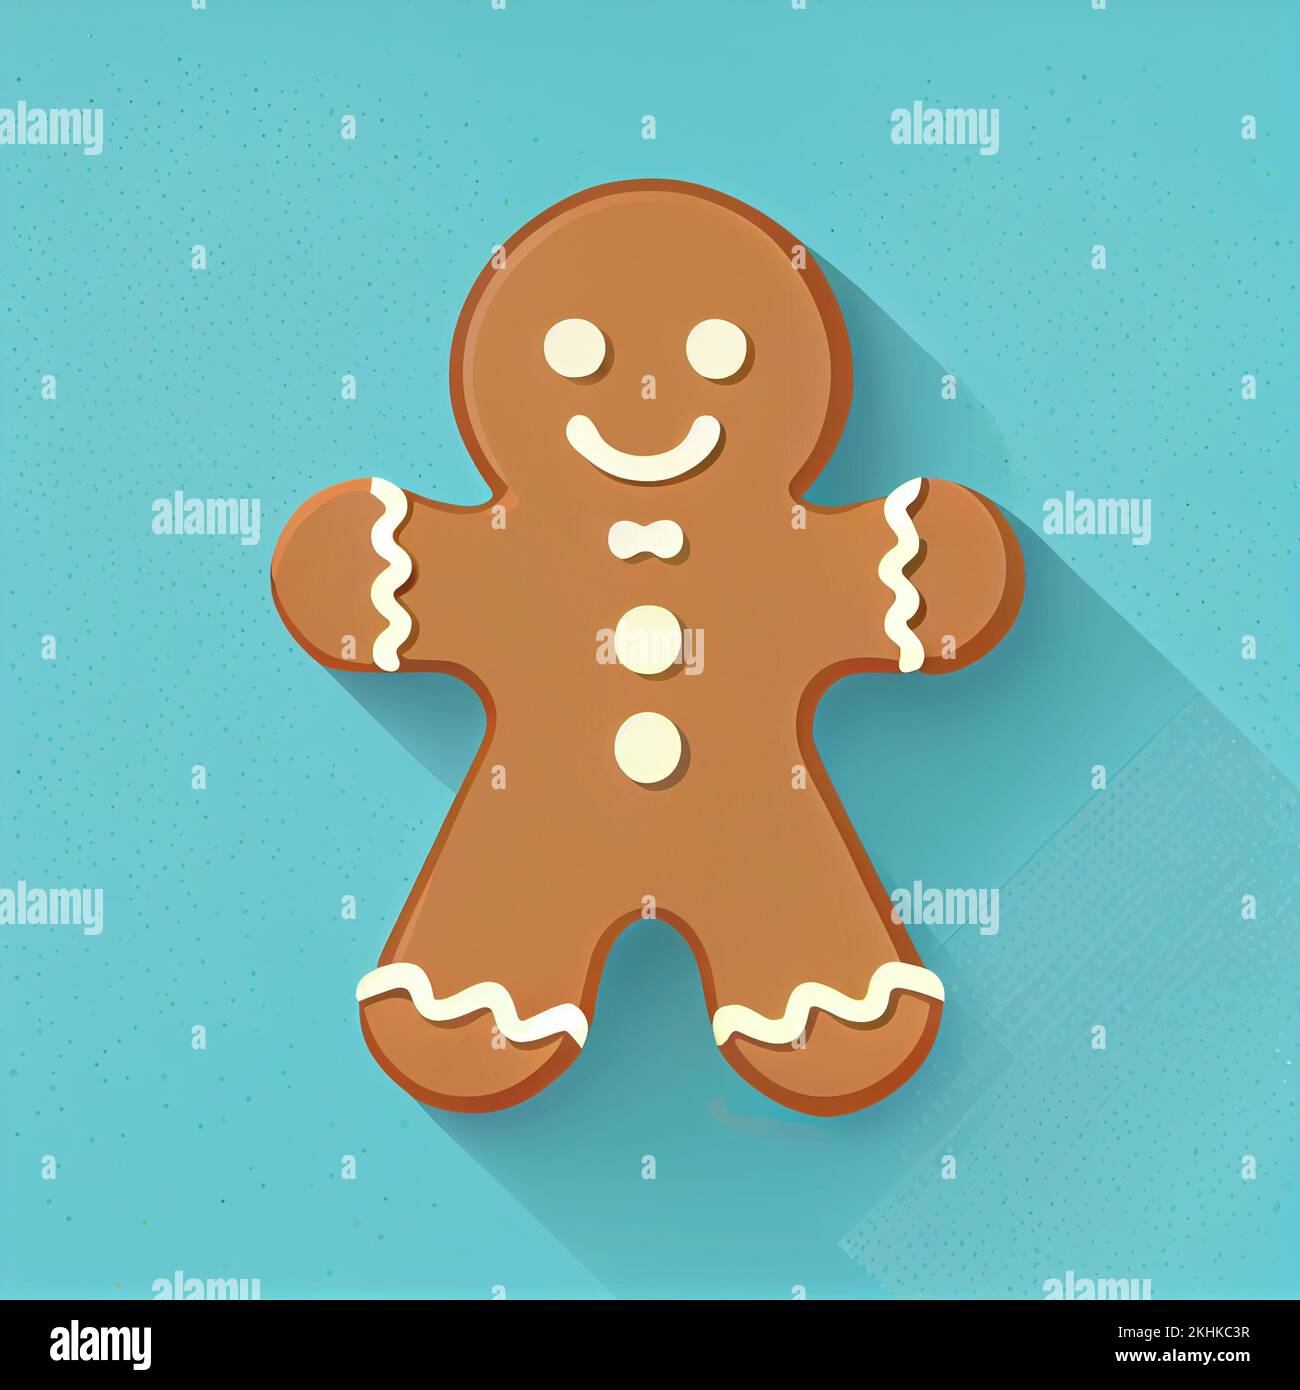 Flat Christmas Gingerbread Man cartoon wallpaper. Modern flat design in ...